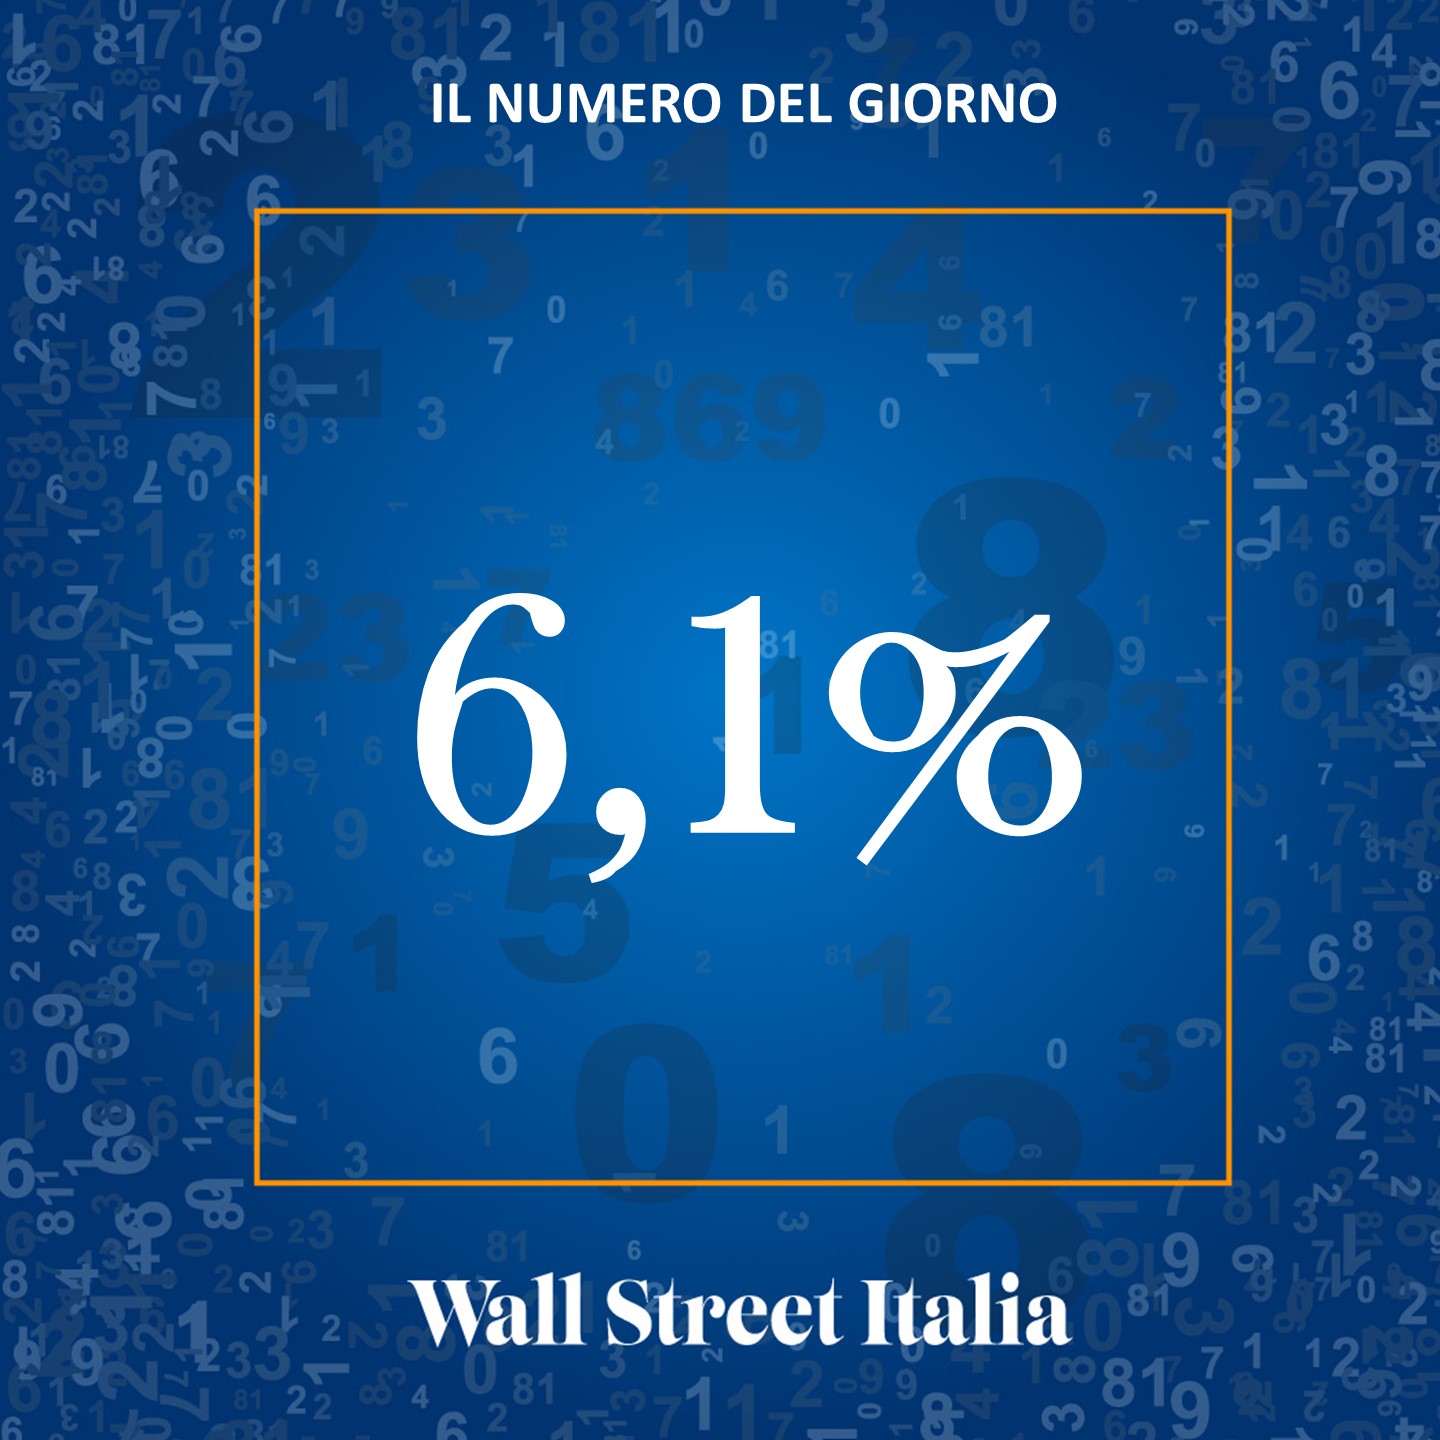 La crescita delle compravendite immobiliari in Italia